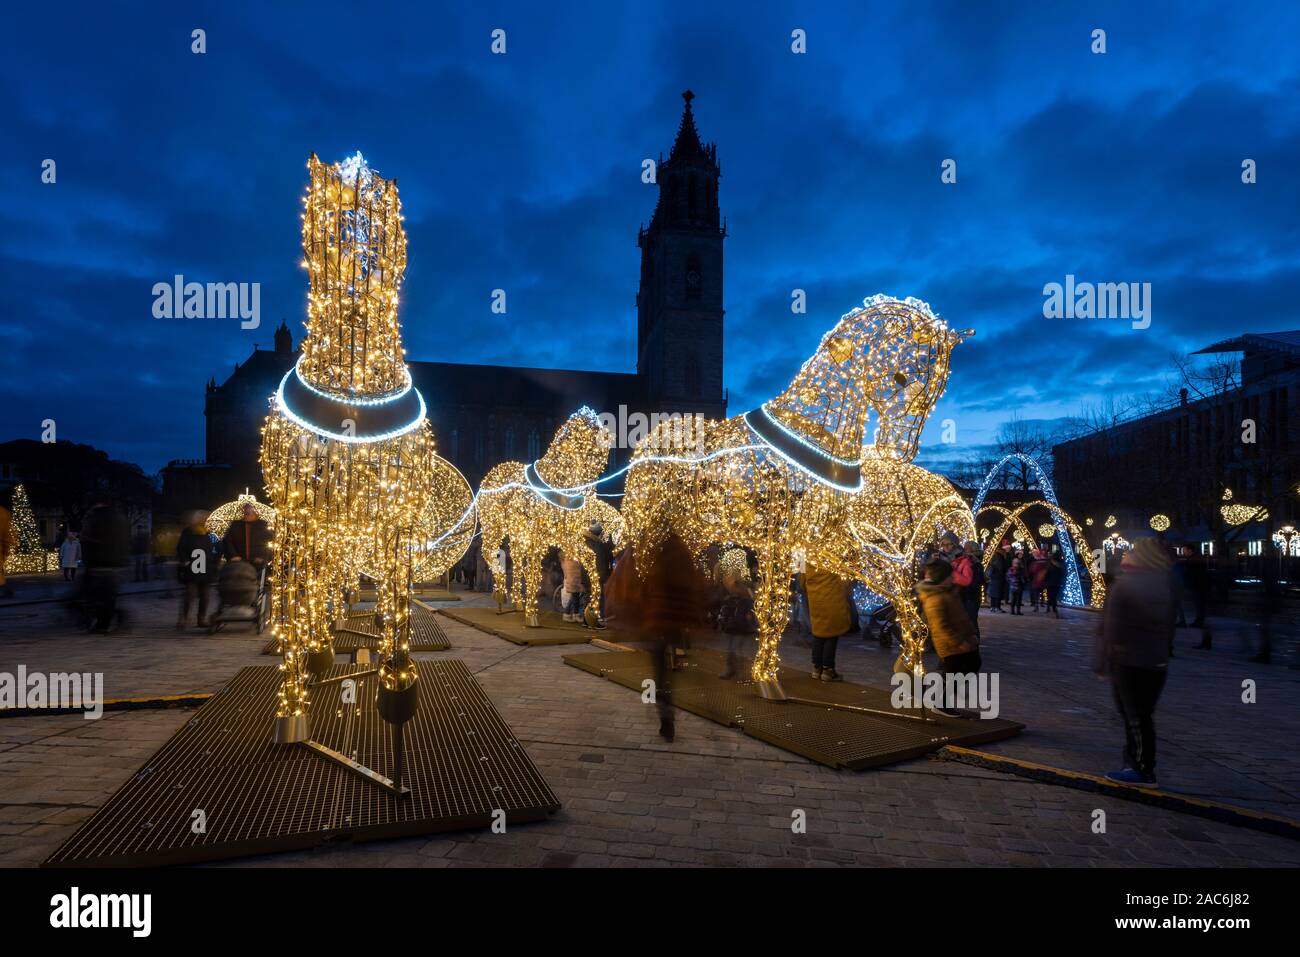 Deutschland, Magdeburg - November 30, 2019: Auf dem Platz der Kathedrale gibt es Weihnachten Licht Skulpturen, die von der Magdeburger Weihnachten ligh gehören Stockfoto